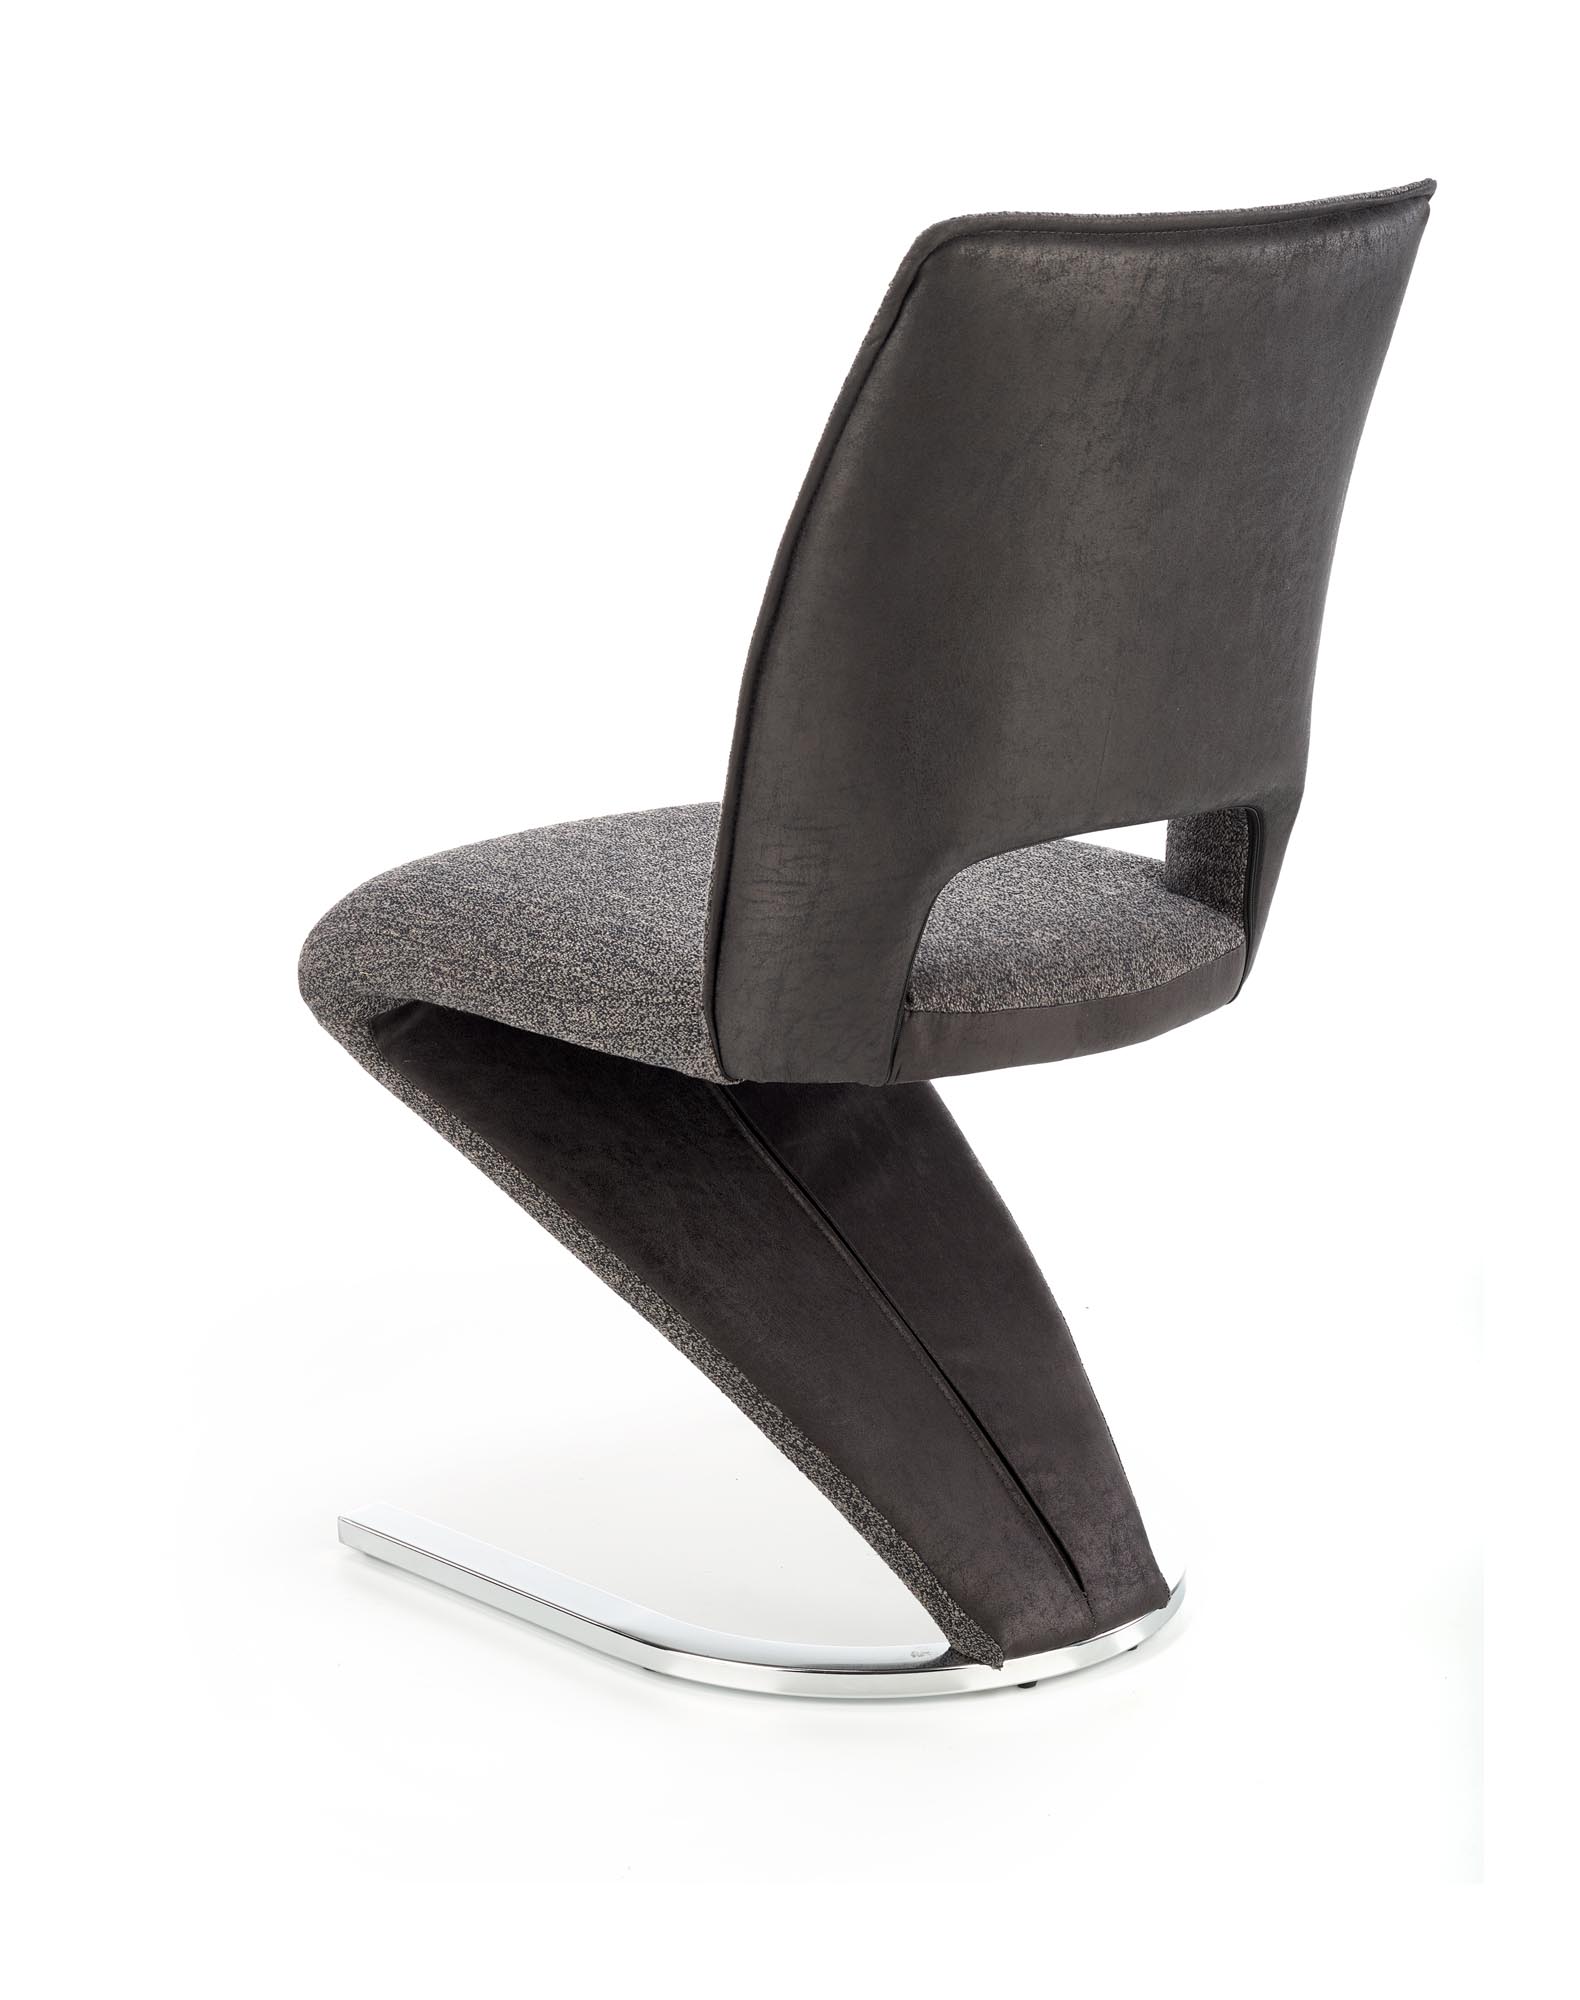 K441 stolica, boja: siva / crna